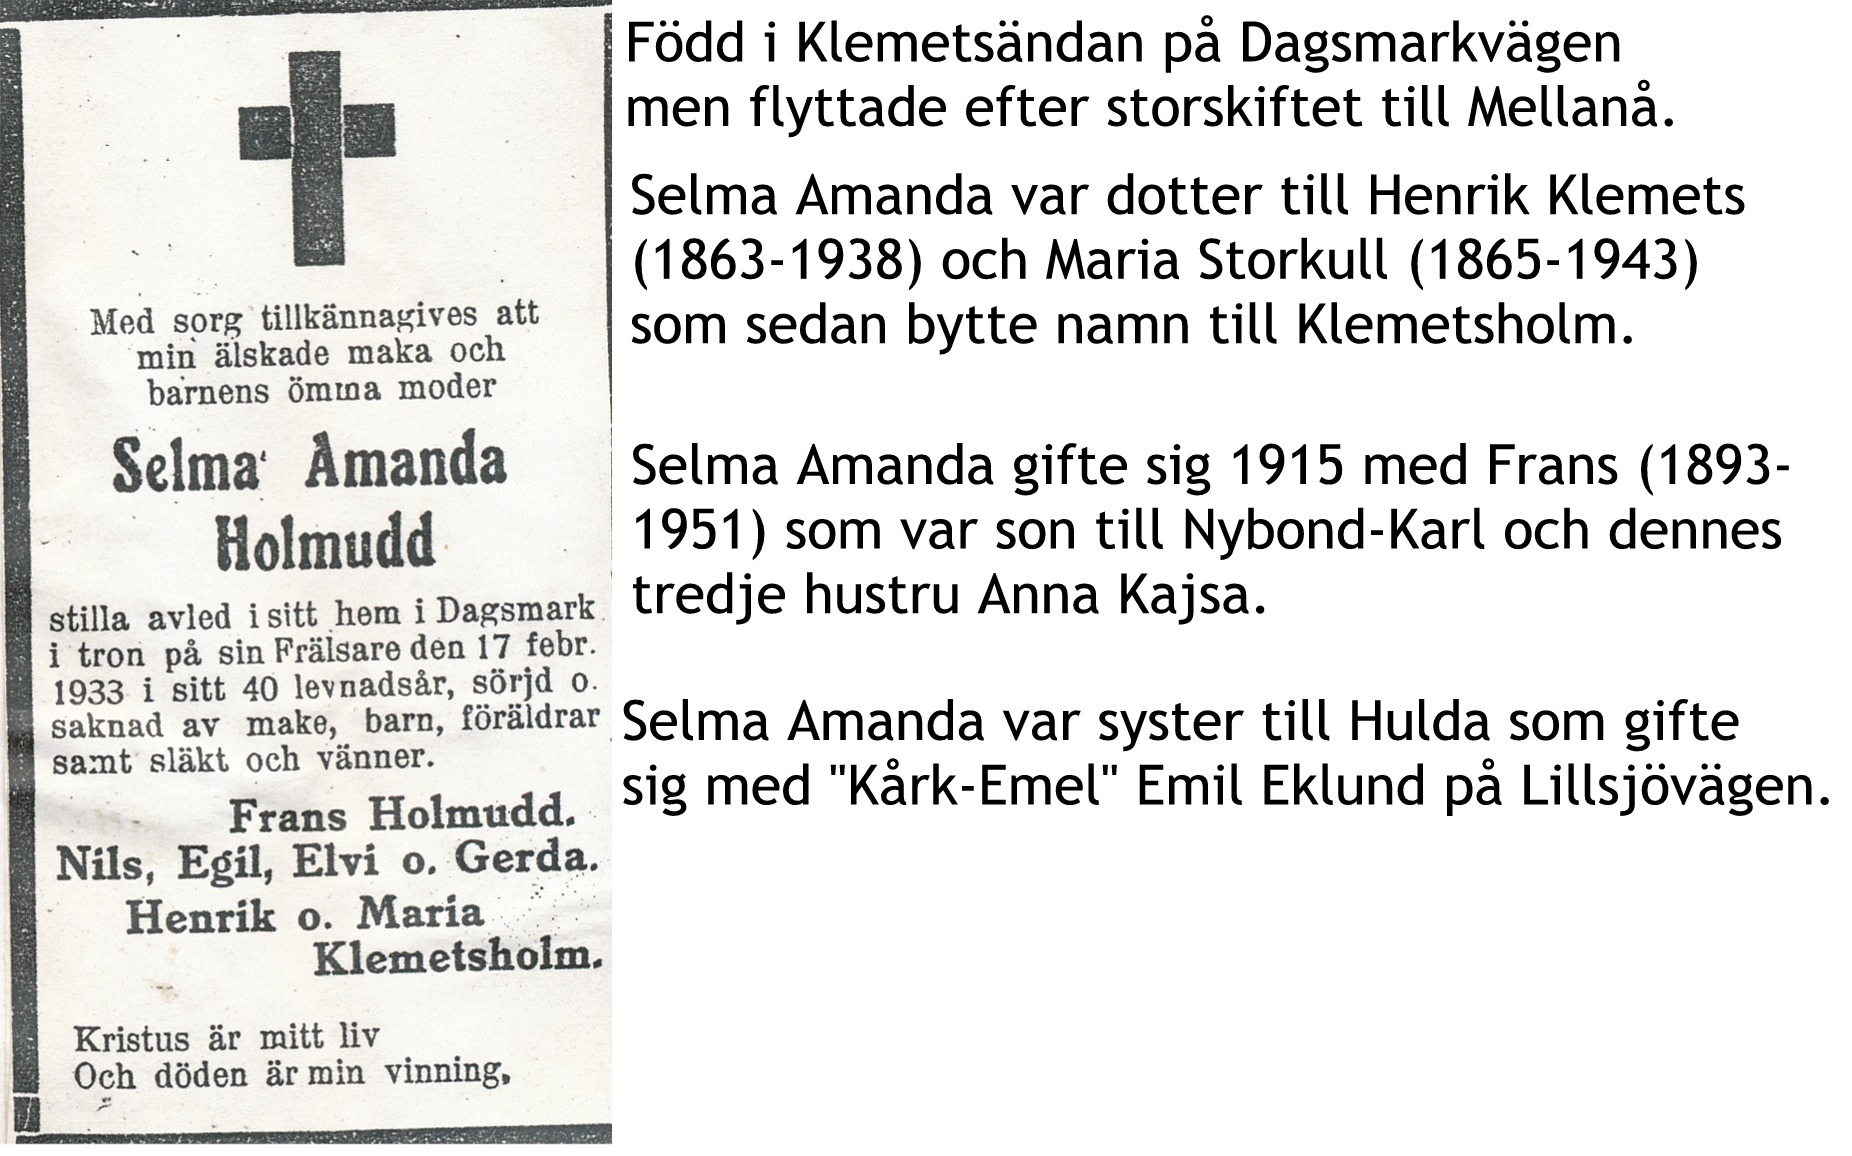 Holmudd Selma Amanda